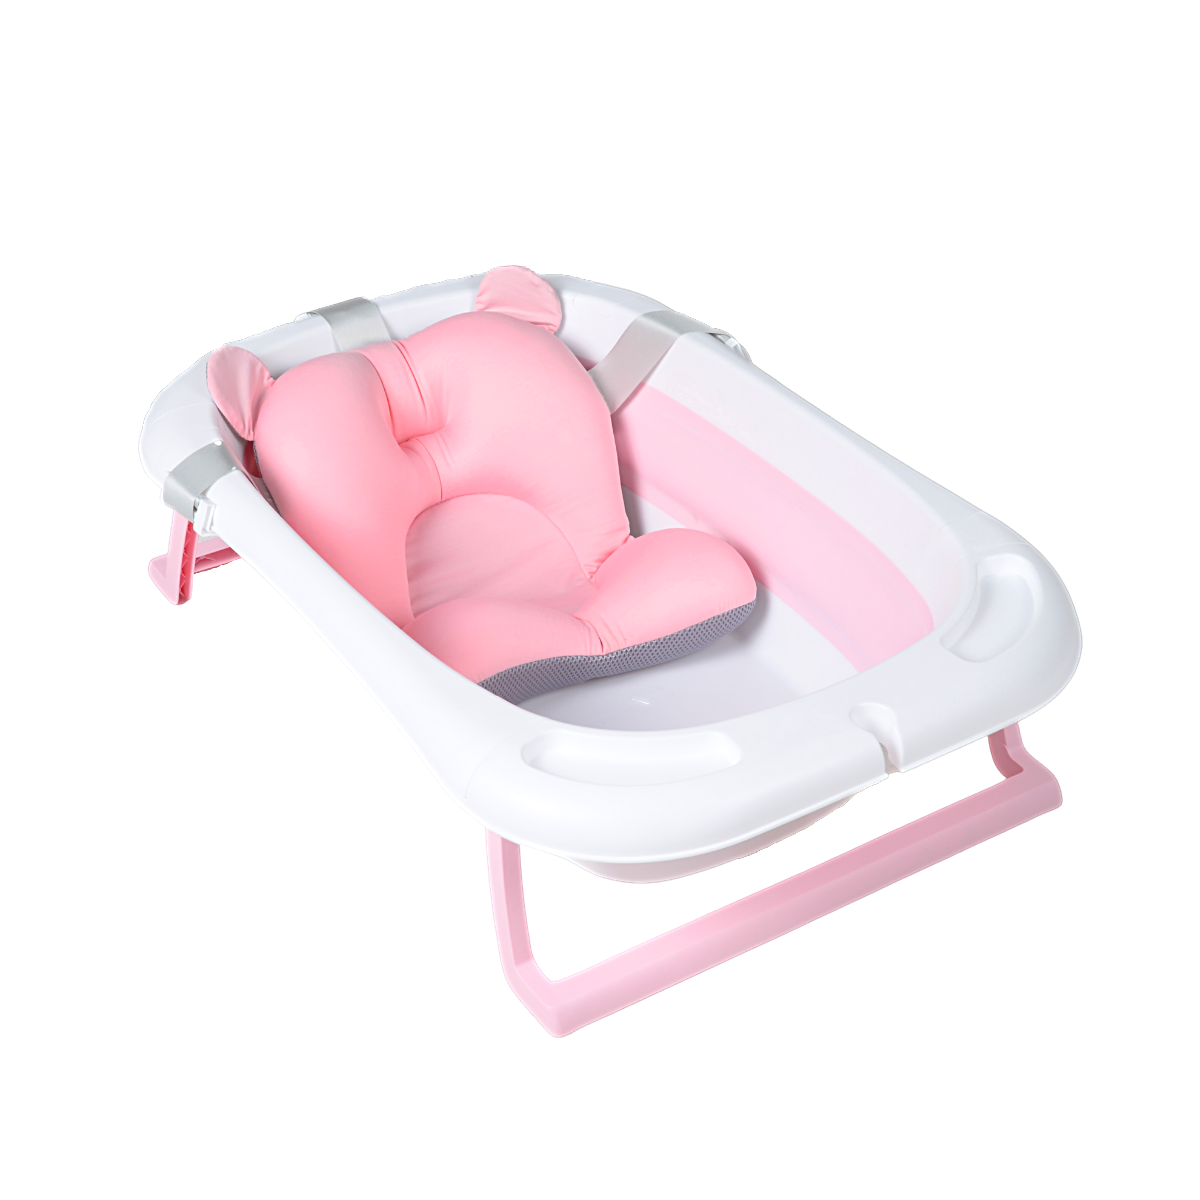 Bañera Tina Plegable Para Bebé Con Termometro + Cojín Malla rosada – BabyCo